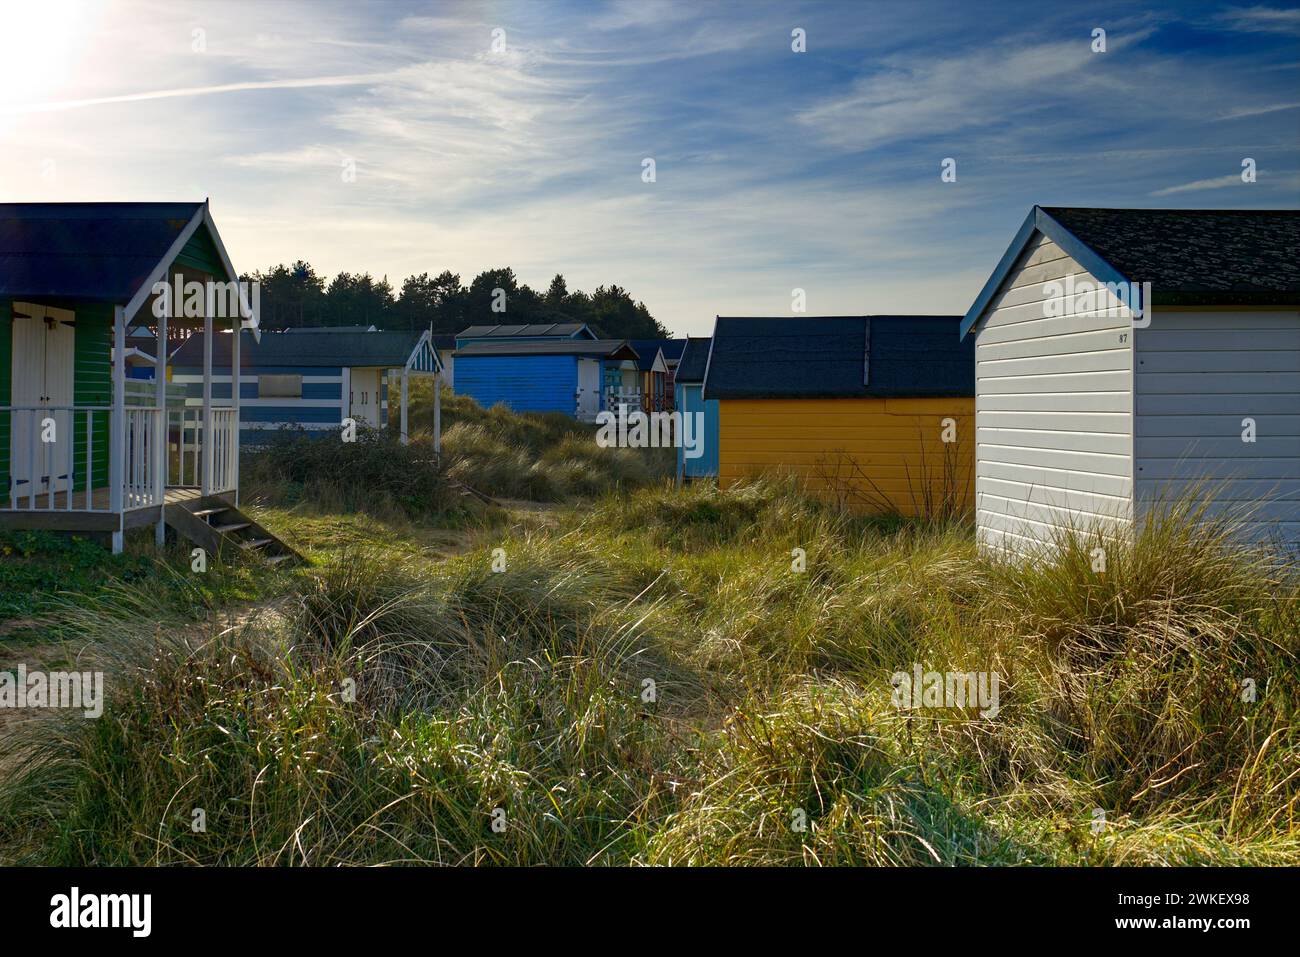 Hunstanton, Norfolk, Regno Unito - colorate capanne sulla spiaggia tra le dune di sabbia del vecchio Hunstanton, fotografate in una giornata di sole Foto Stock